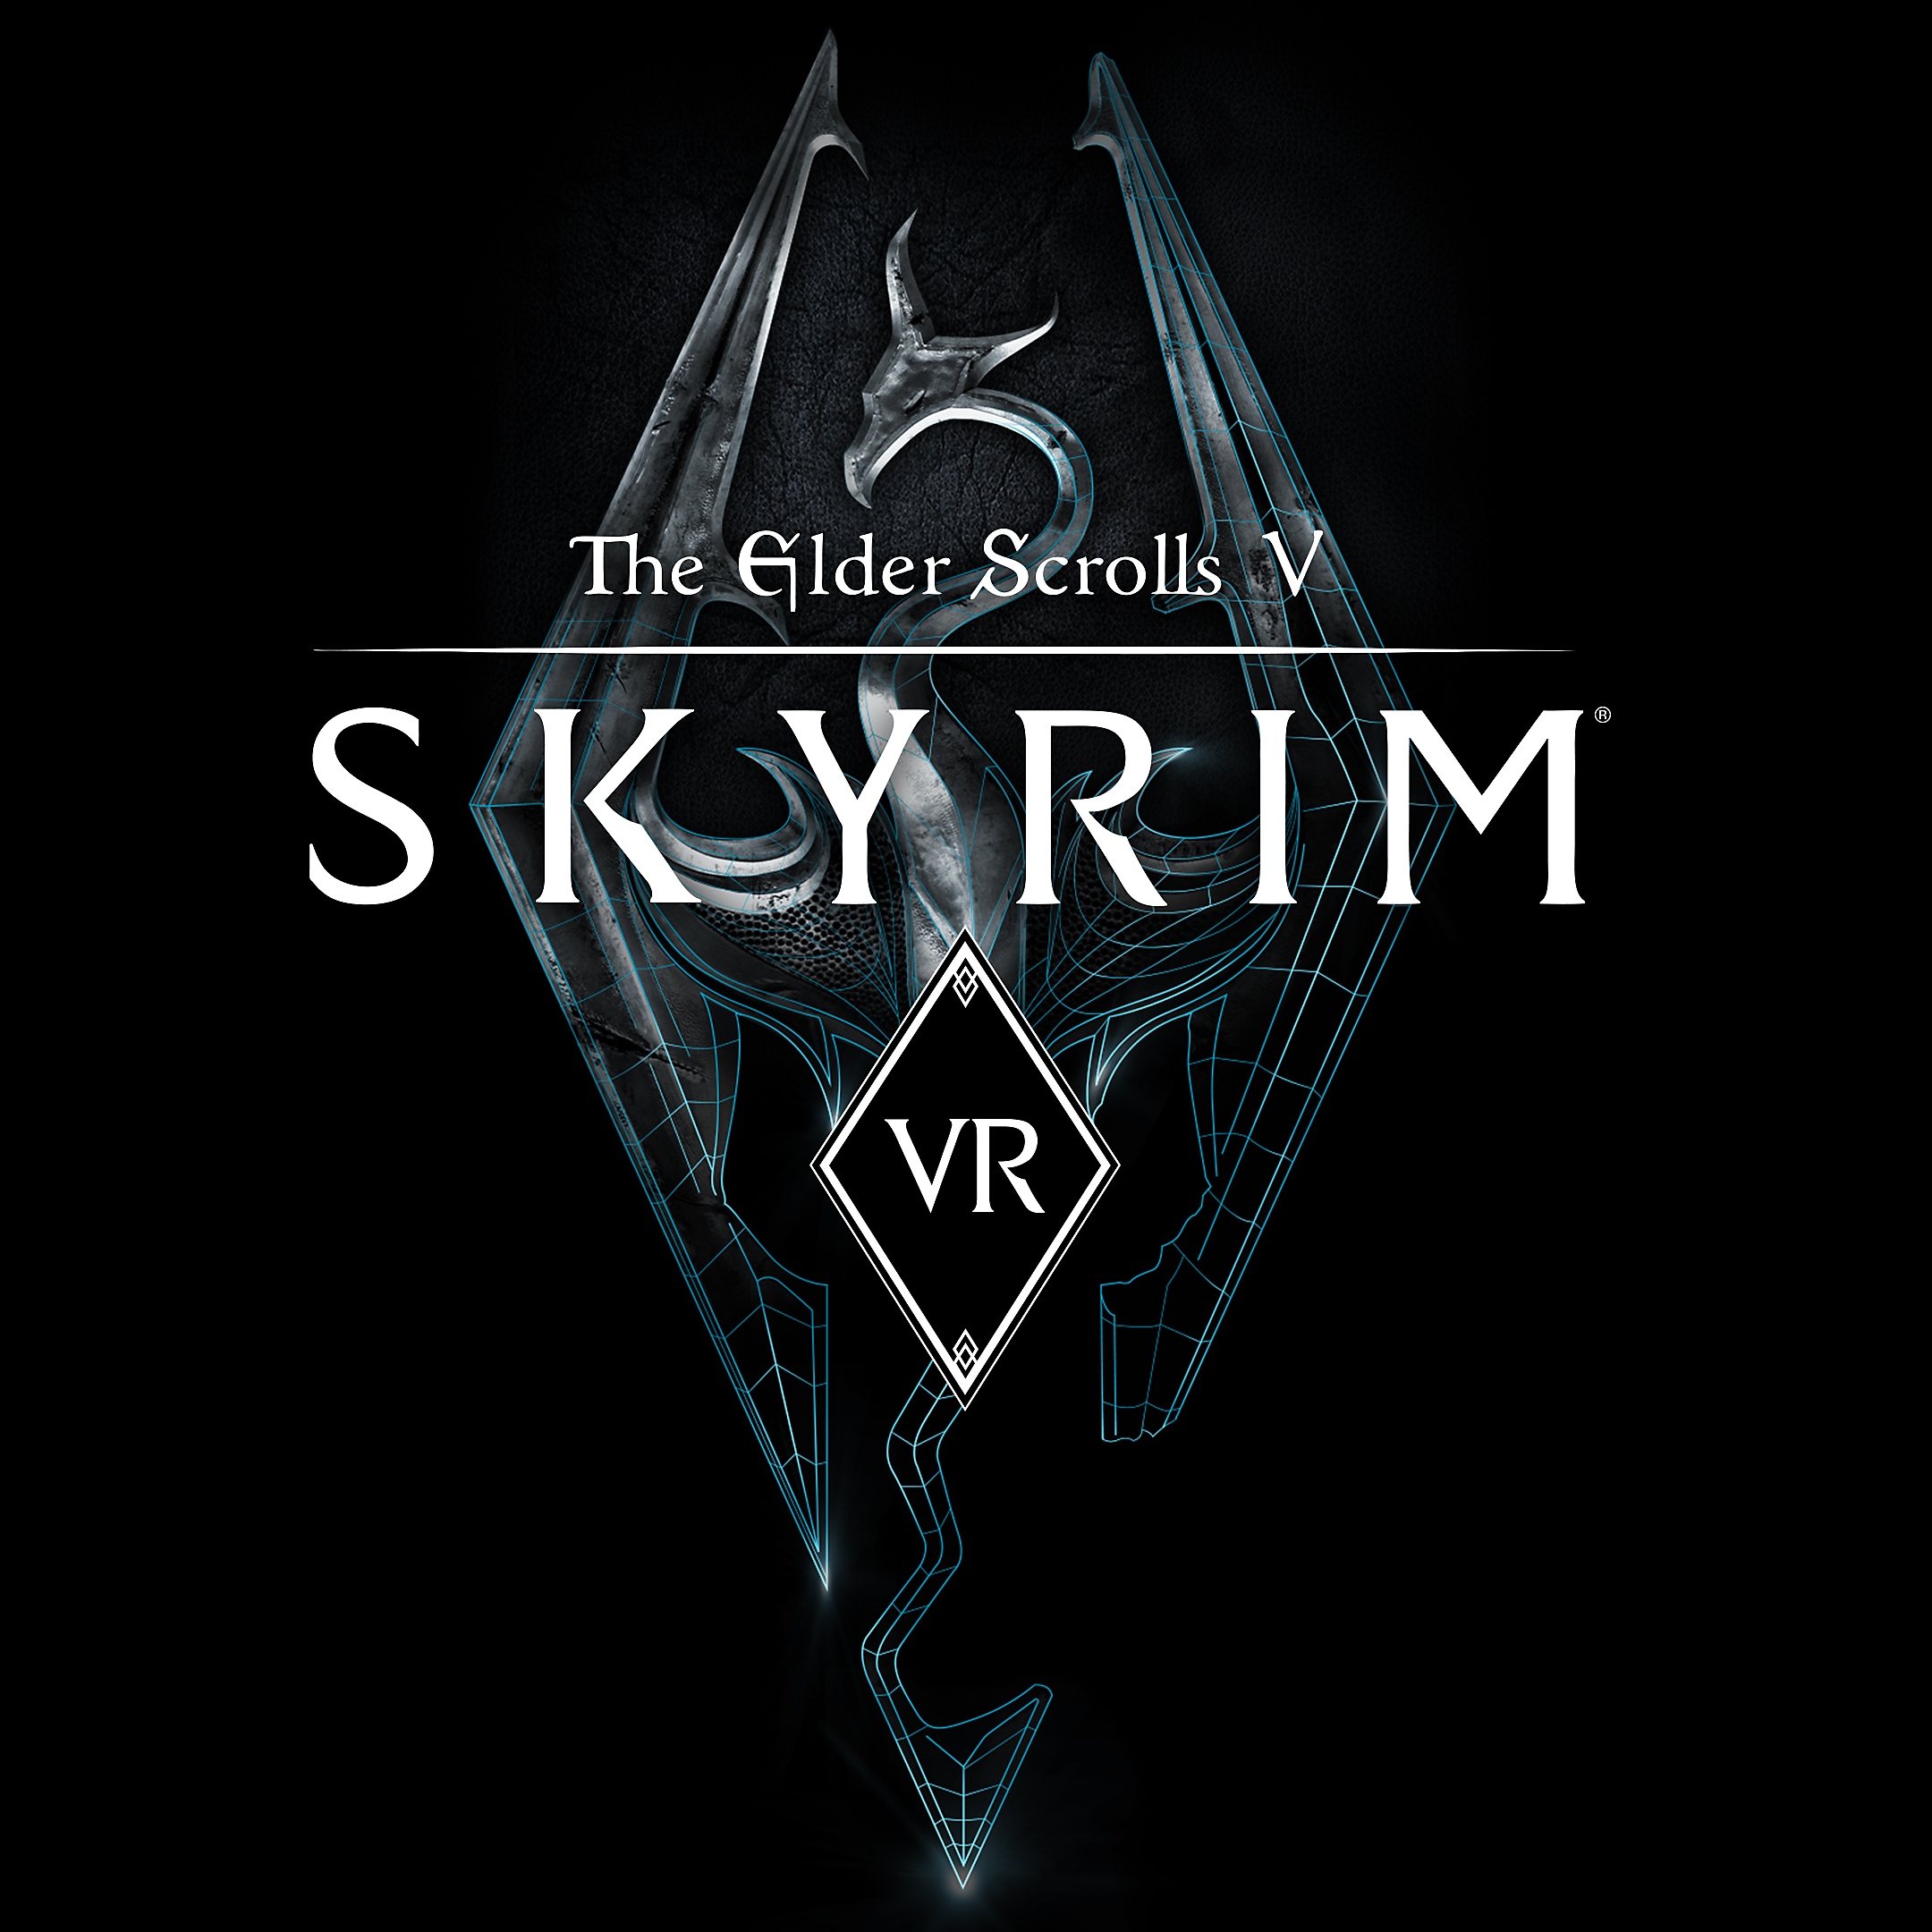 صورة مقربة للعبة The Elder Scrolls V: Skyrim VR